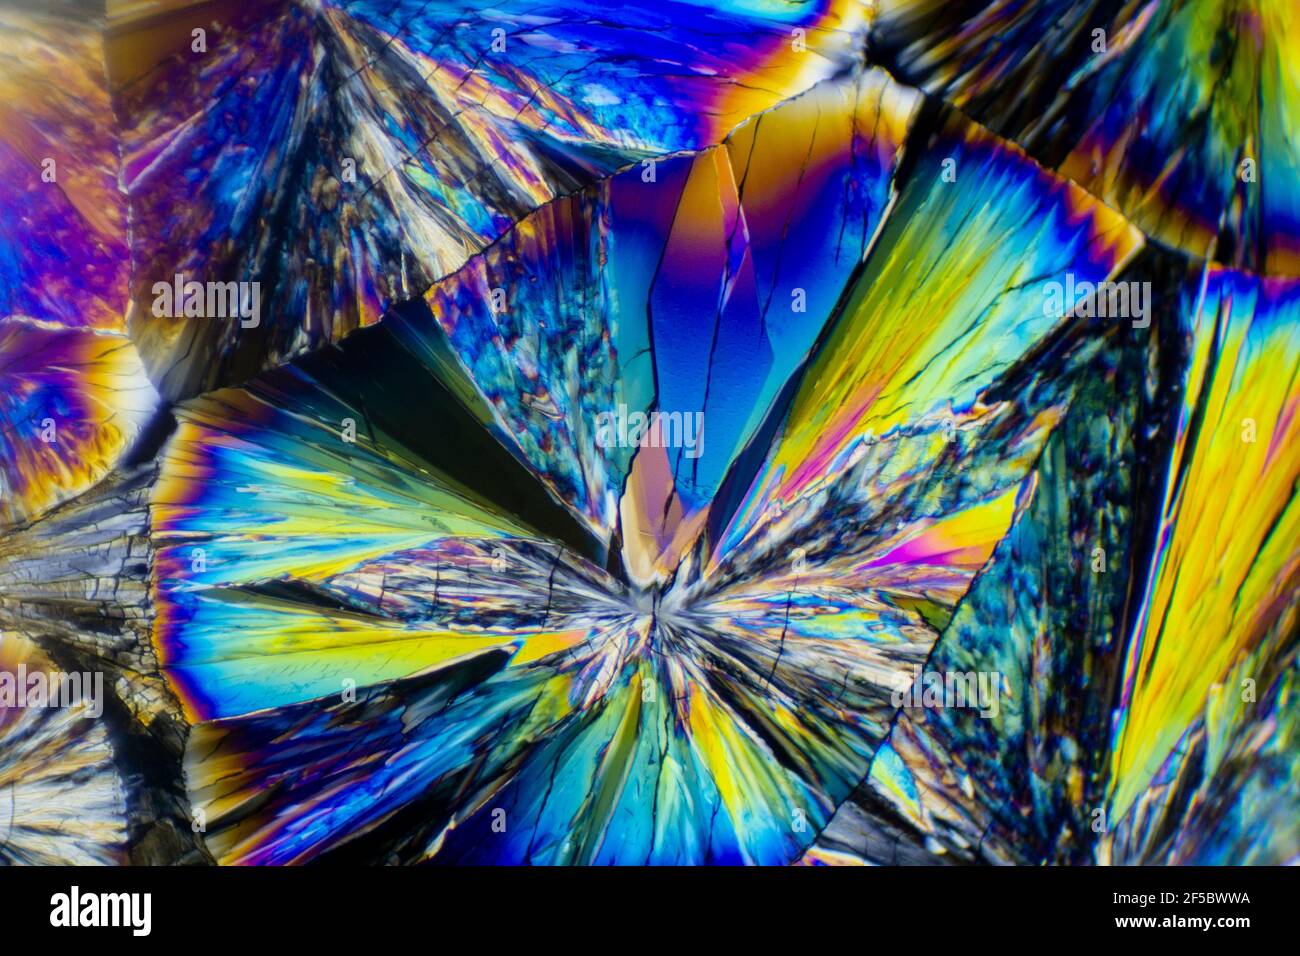 Esta es una foto microscópica de cristales de ácido cítrico. Utilicé un filtro polarizador especial para sacar los colores brillantes y las texturas del cristal. Foto de stock